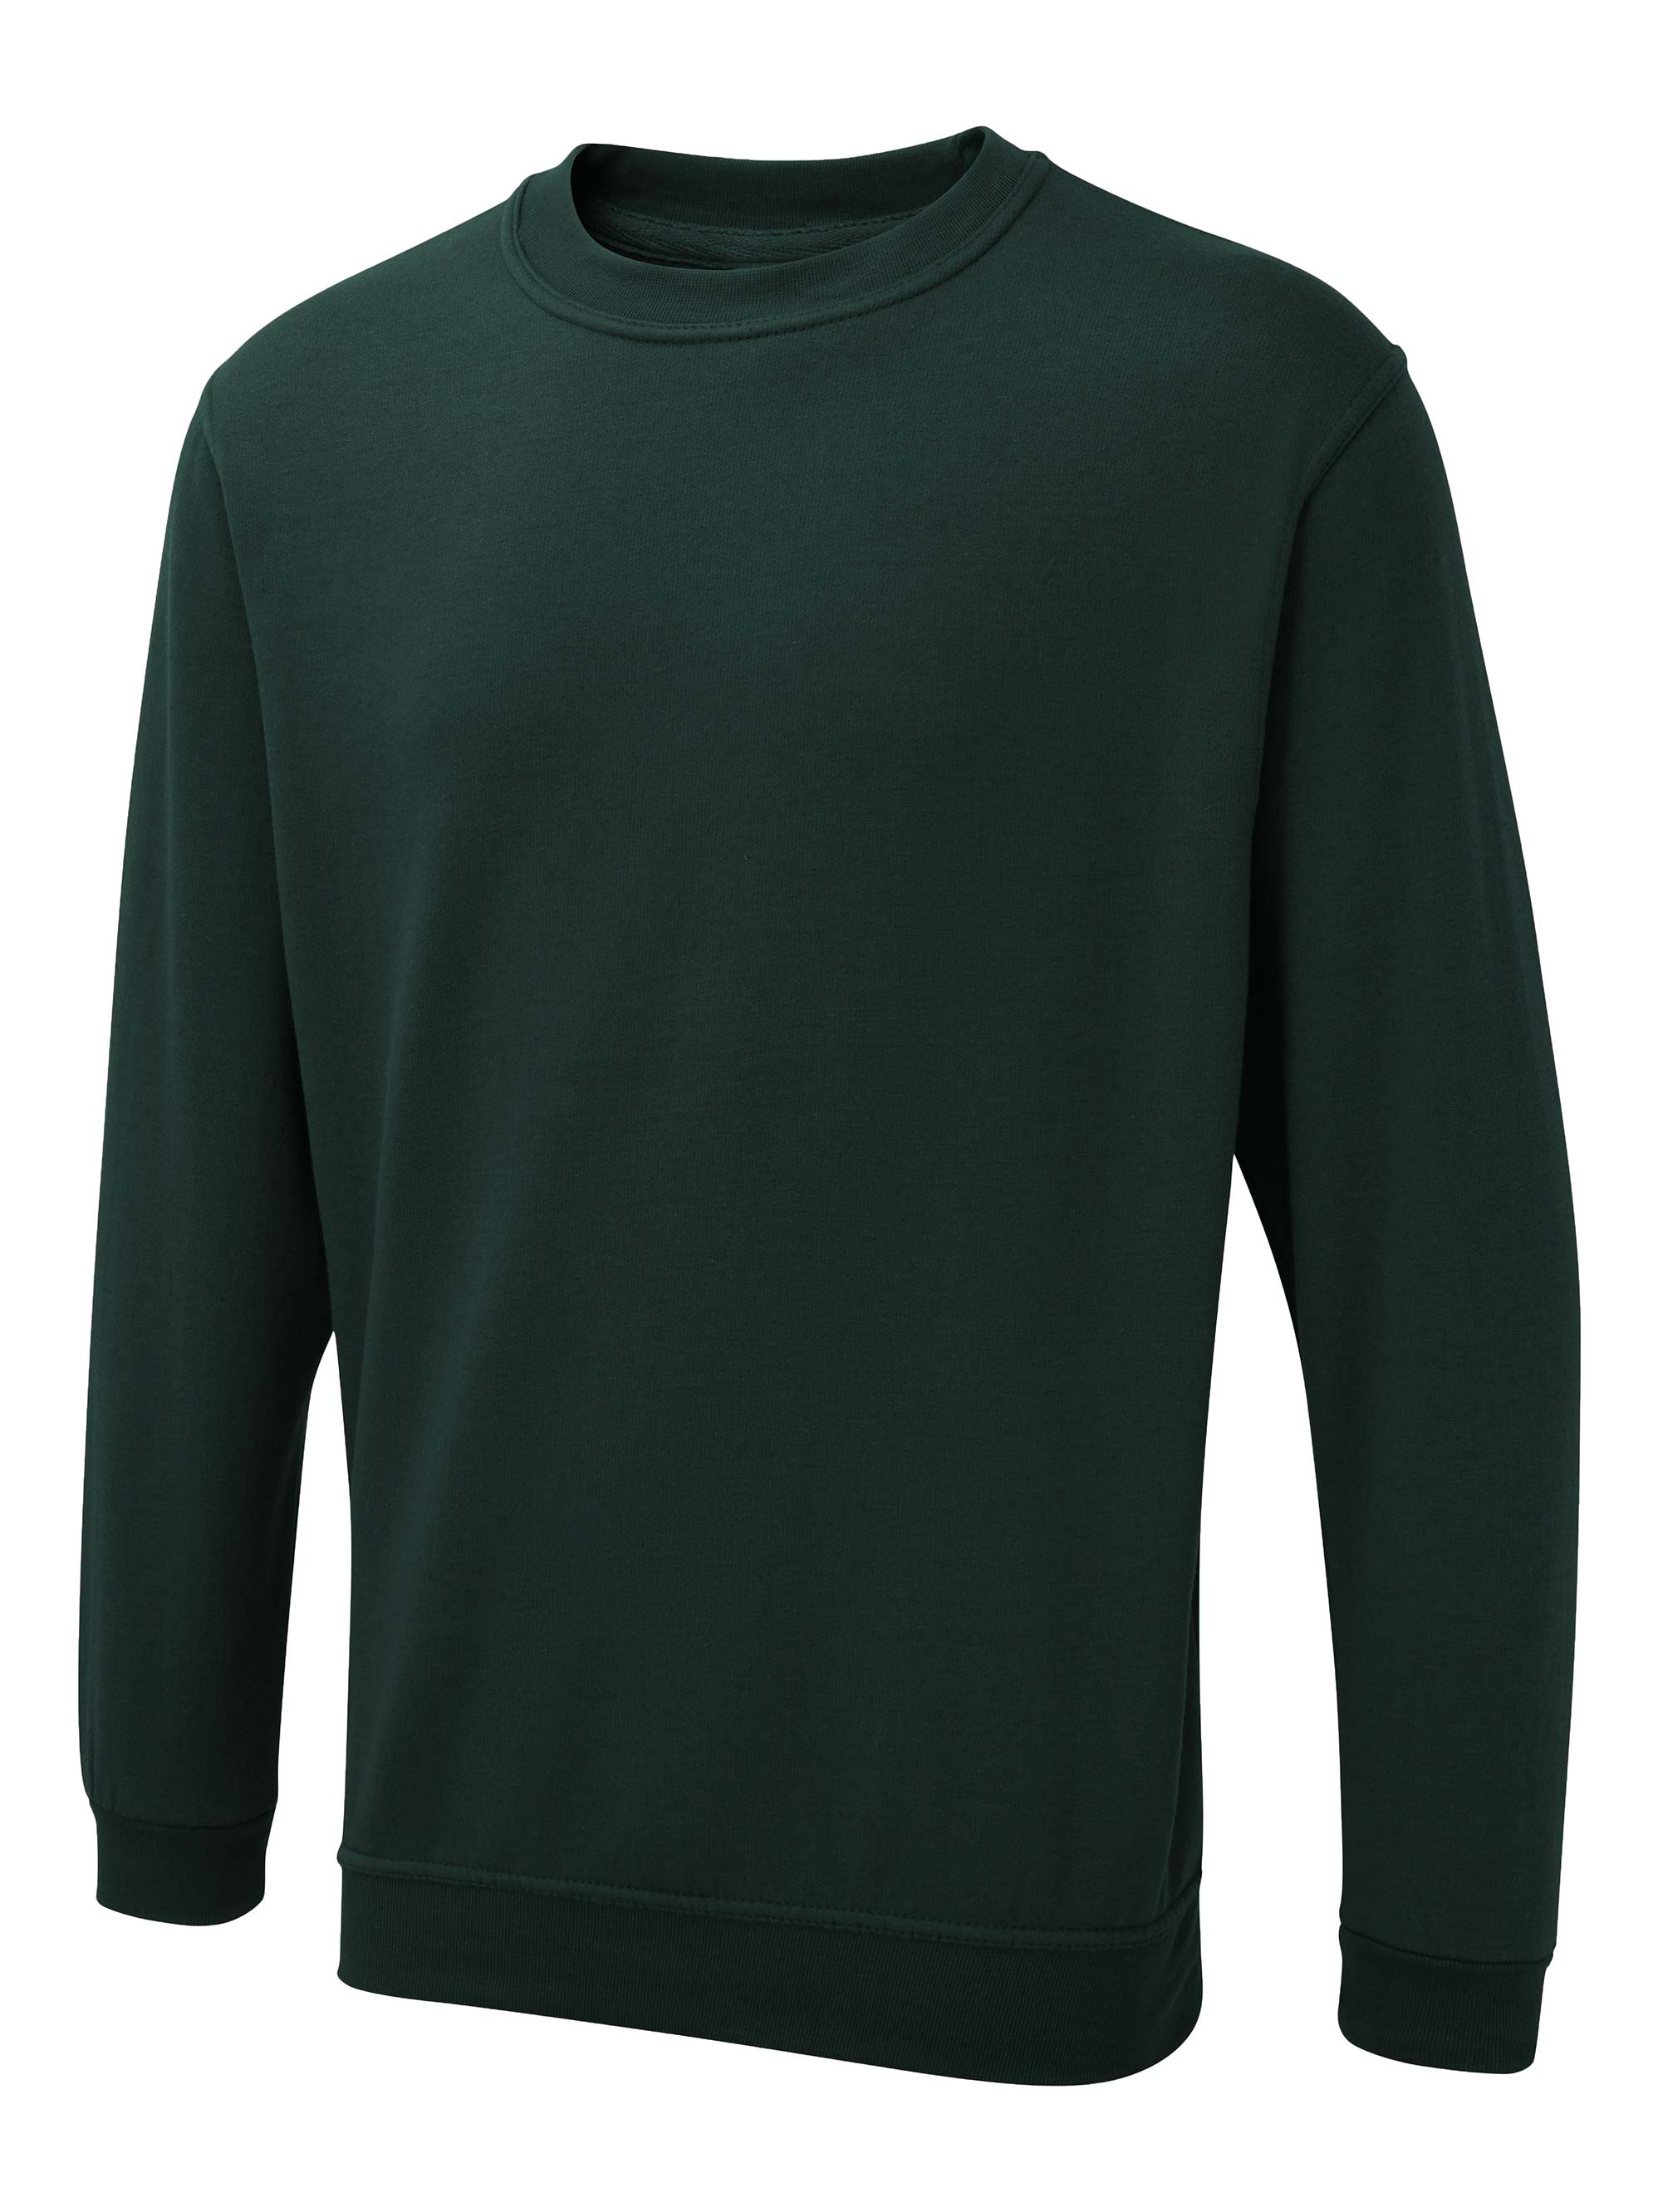 Uneek The UX Sweatshirt - ux3 (Bottle Green)